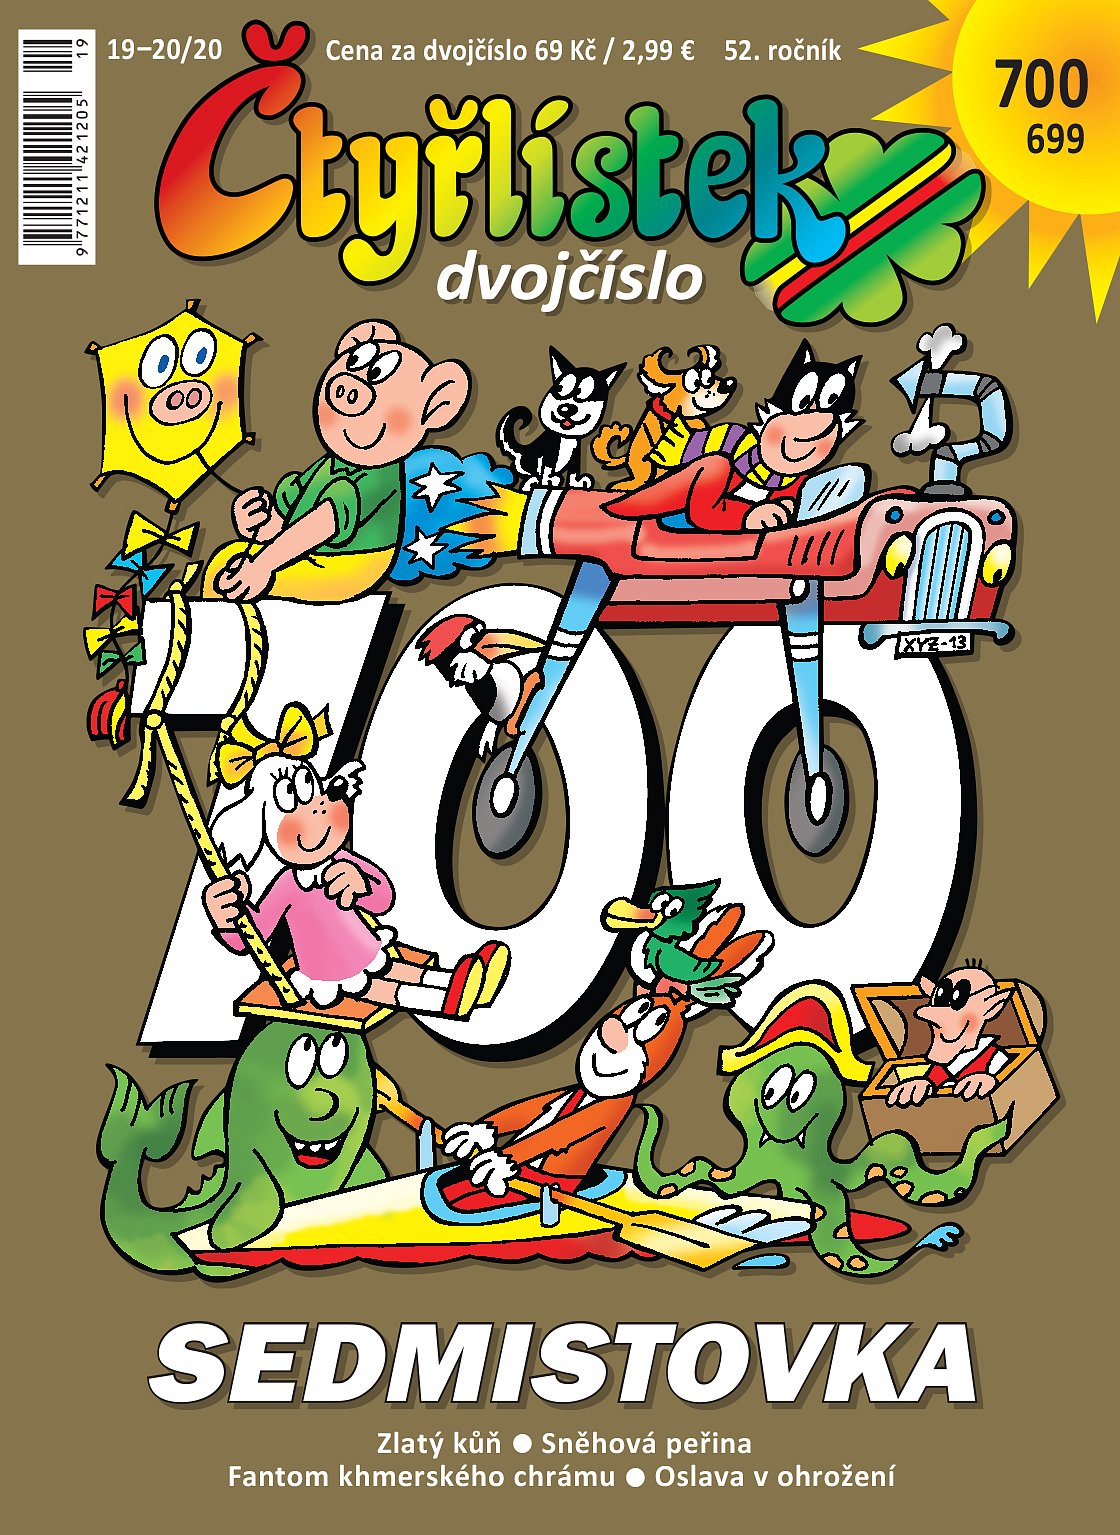 Komiksový časopis Čtyřlístek oslavil sedmisté vydání 1